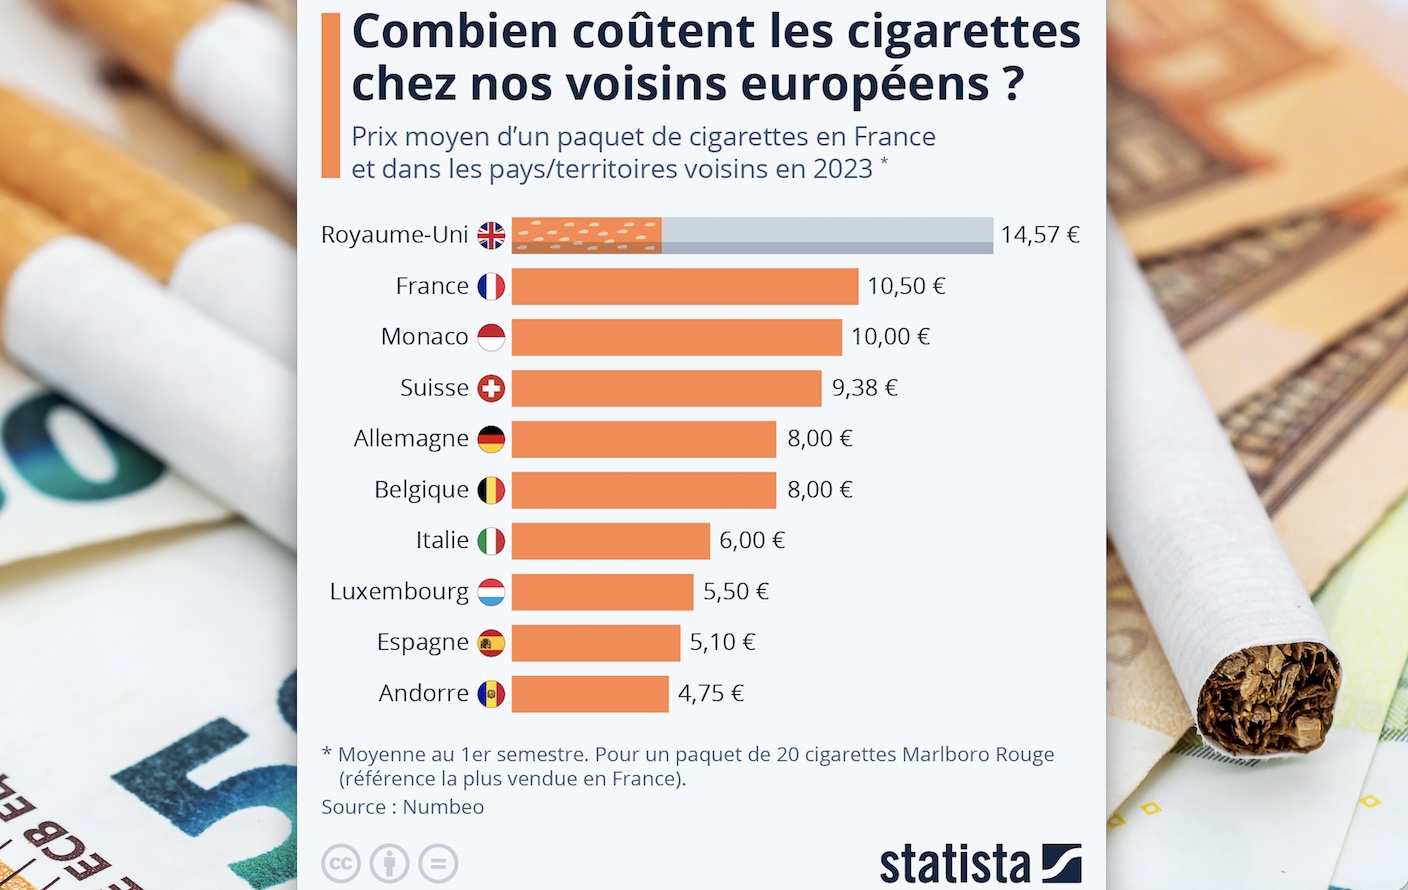 Slovénie - 2022 : un paquet de cigarettes Marlboro coûte 4,50€